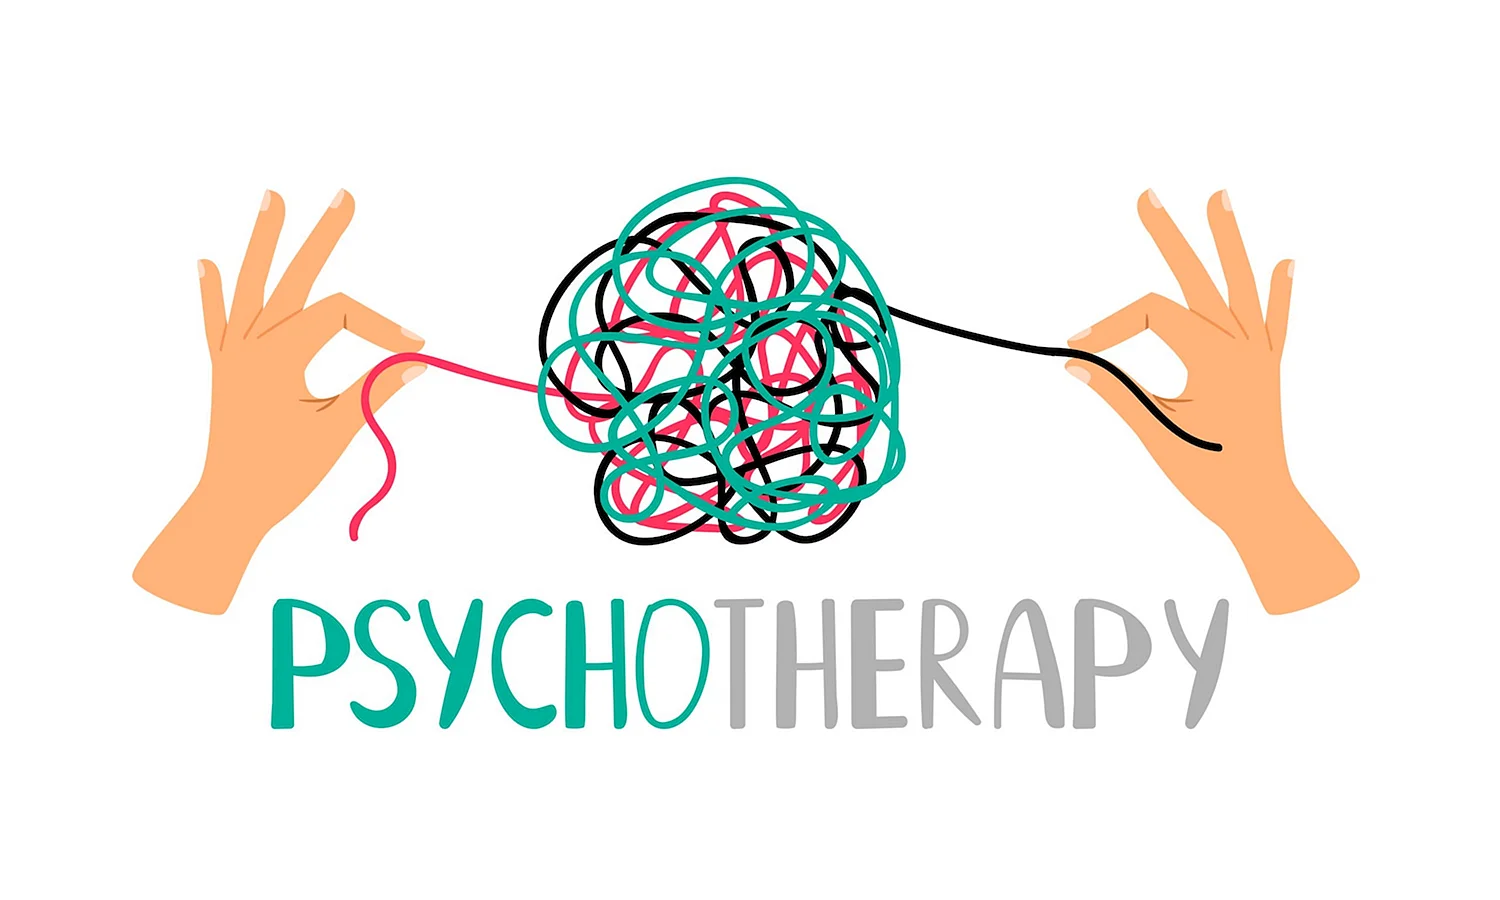 Психотерапия значок